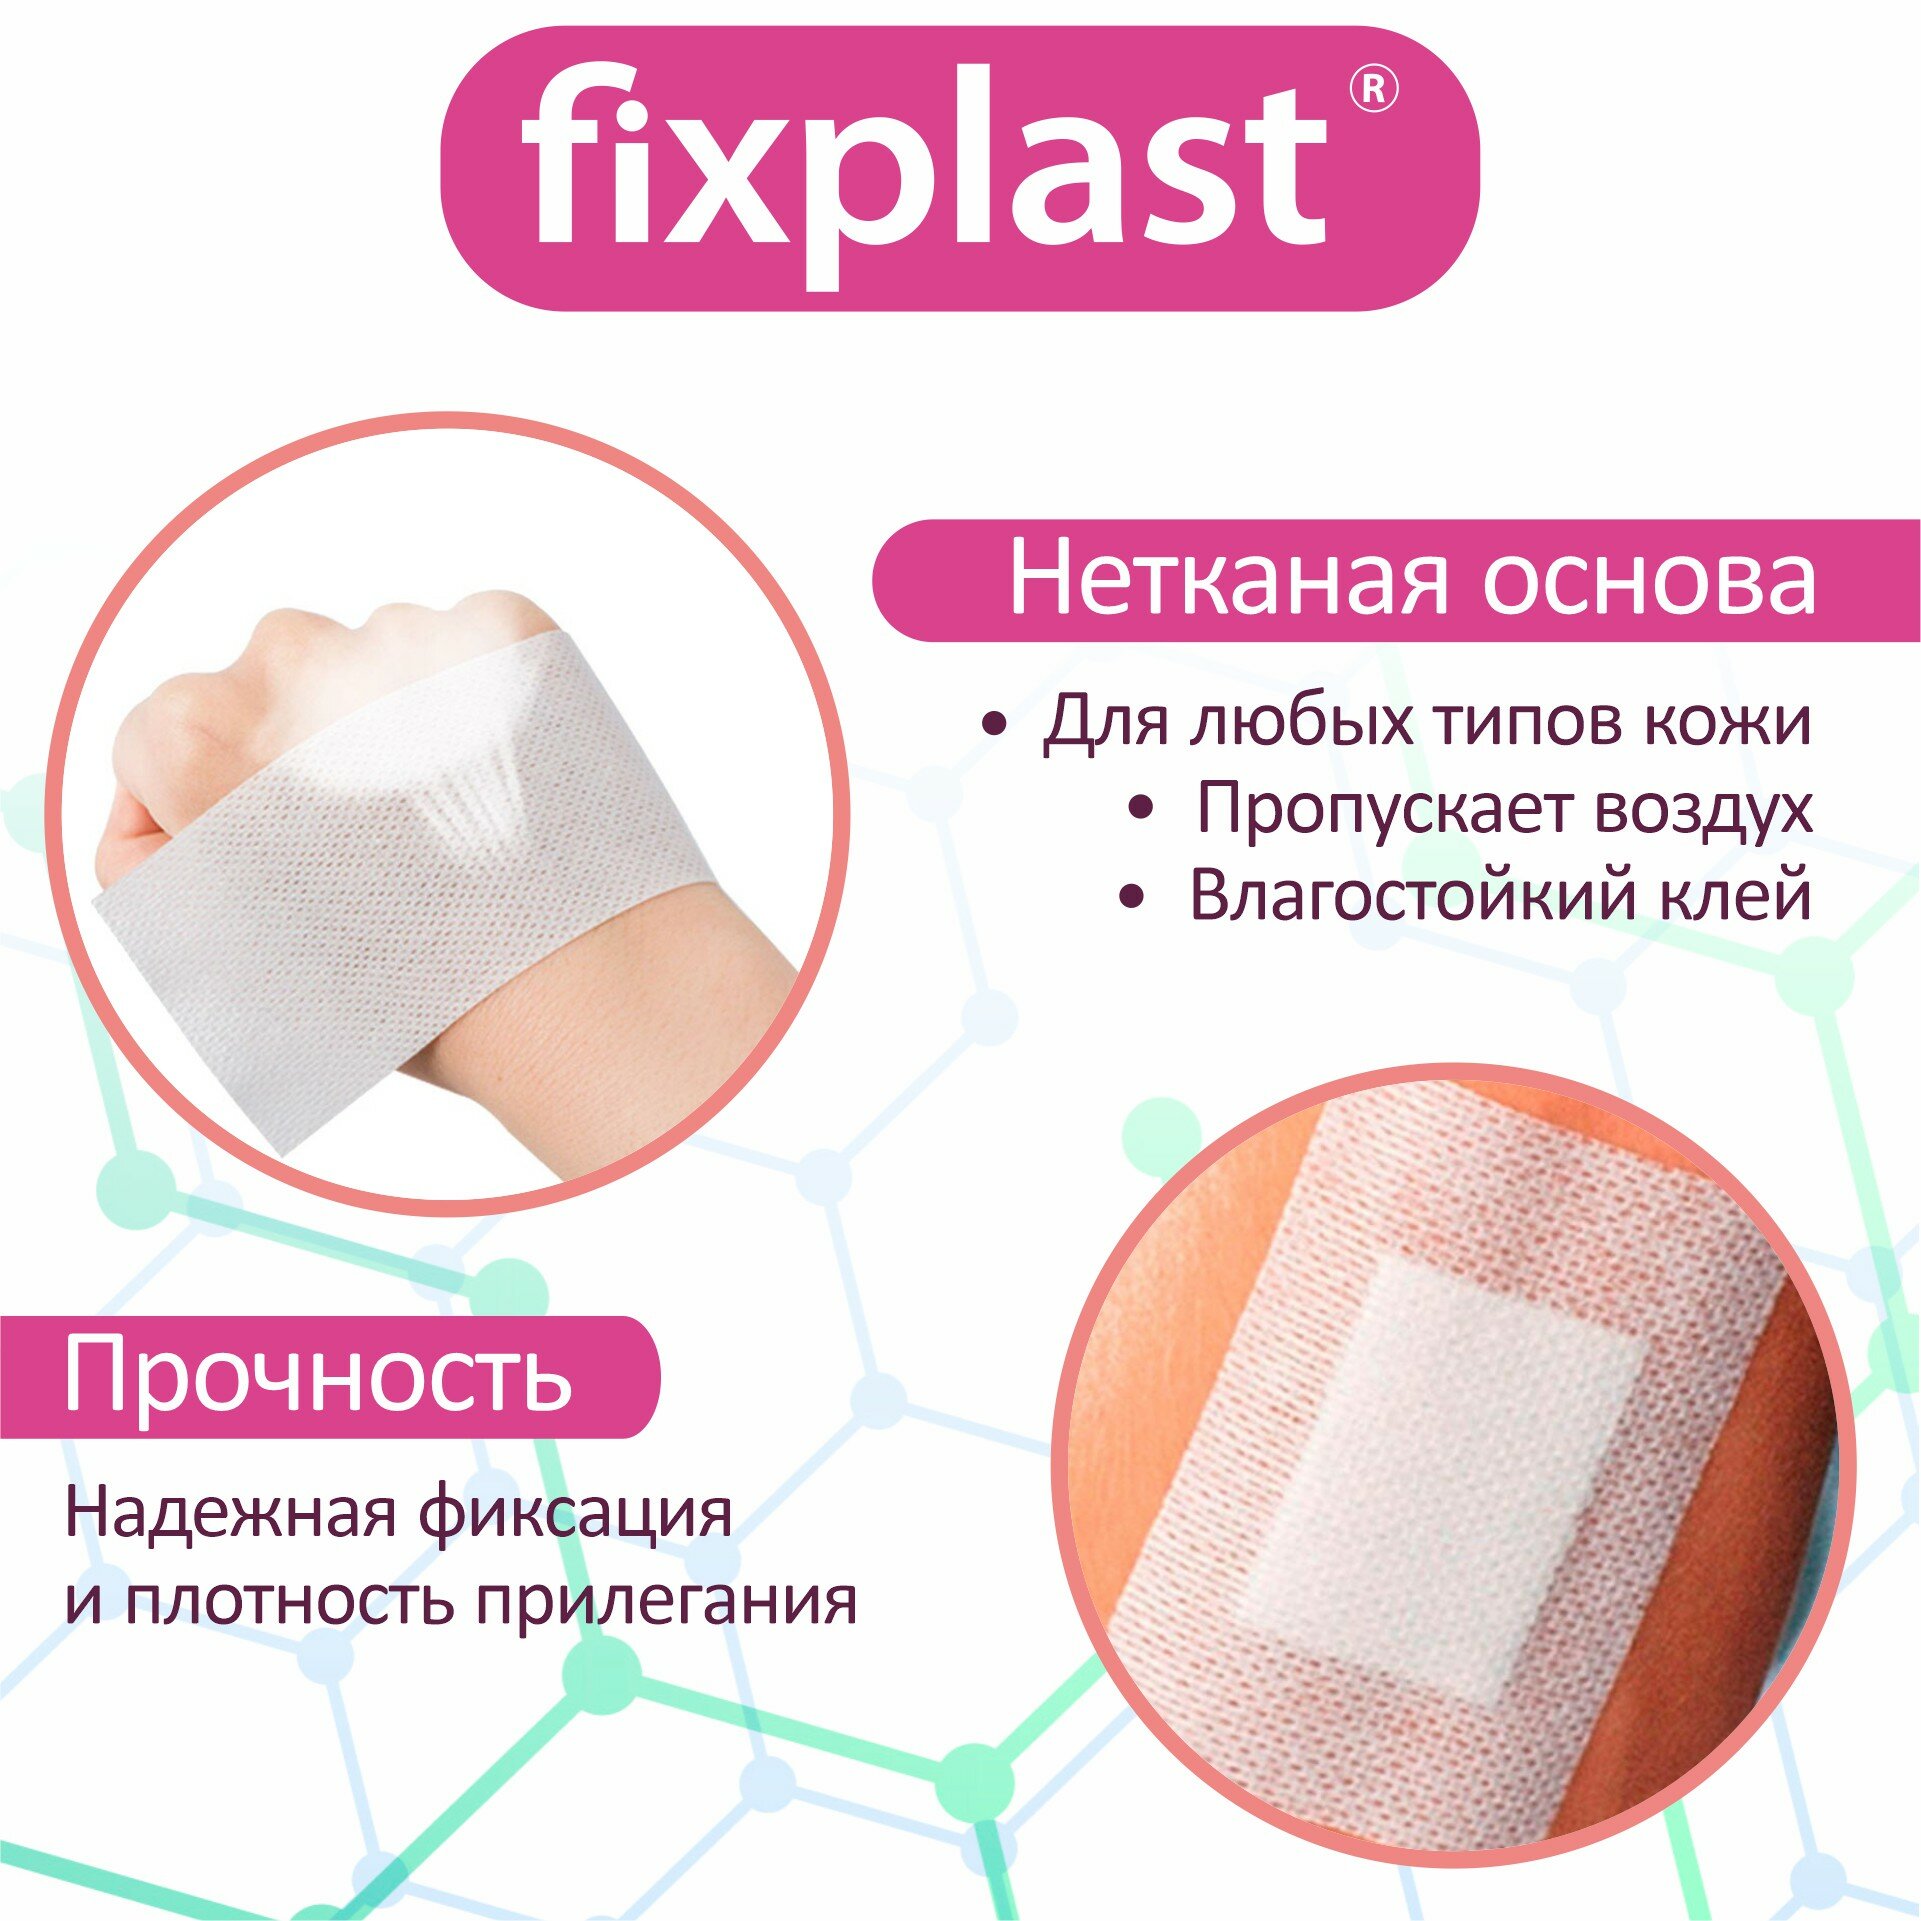 Пластырь-повязка 10*8 см медицинская стерильная на рану и шов 20 штук, Fixplast с сорбционной подушечкой